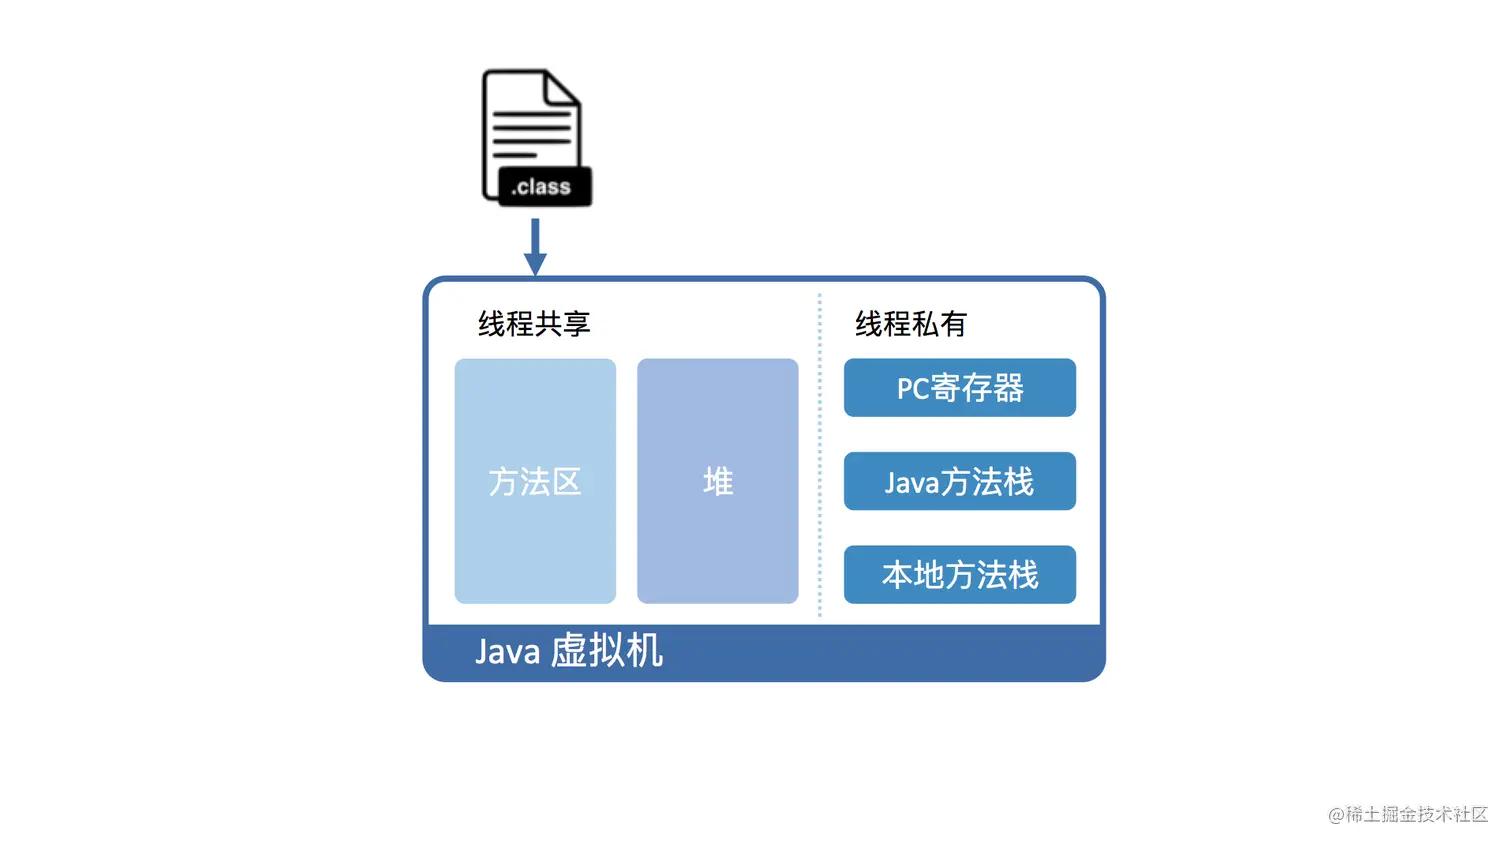 Java虚拟机-软件层面.png